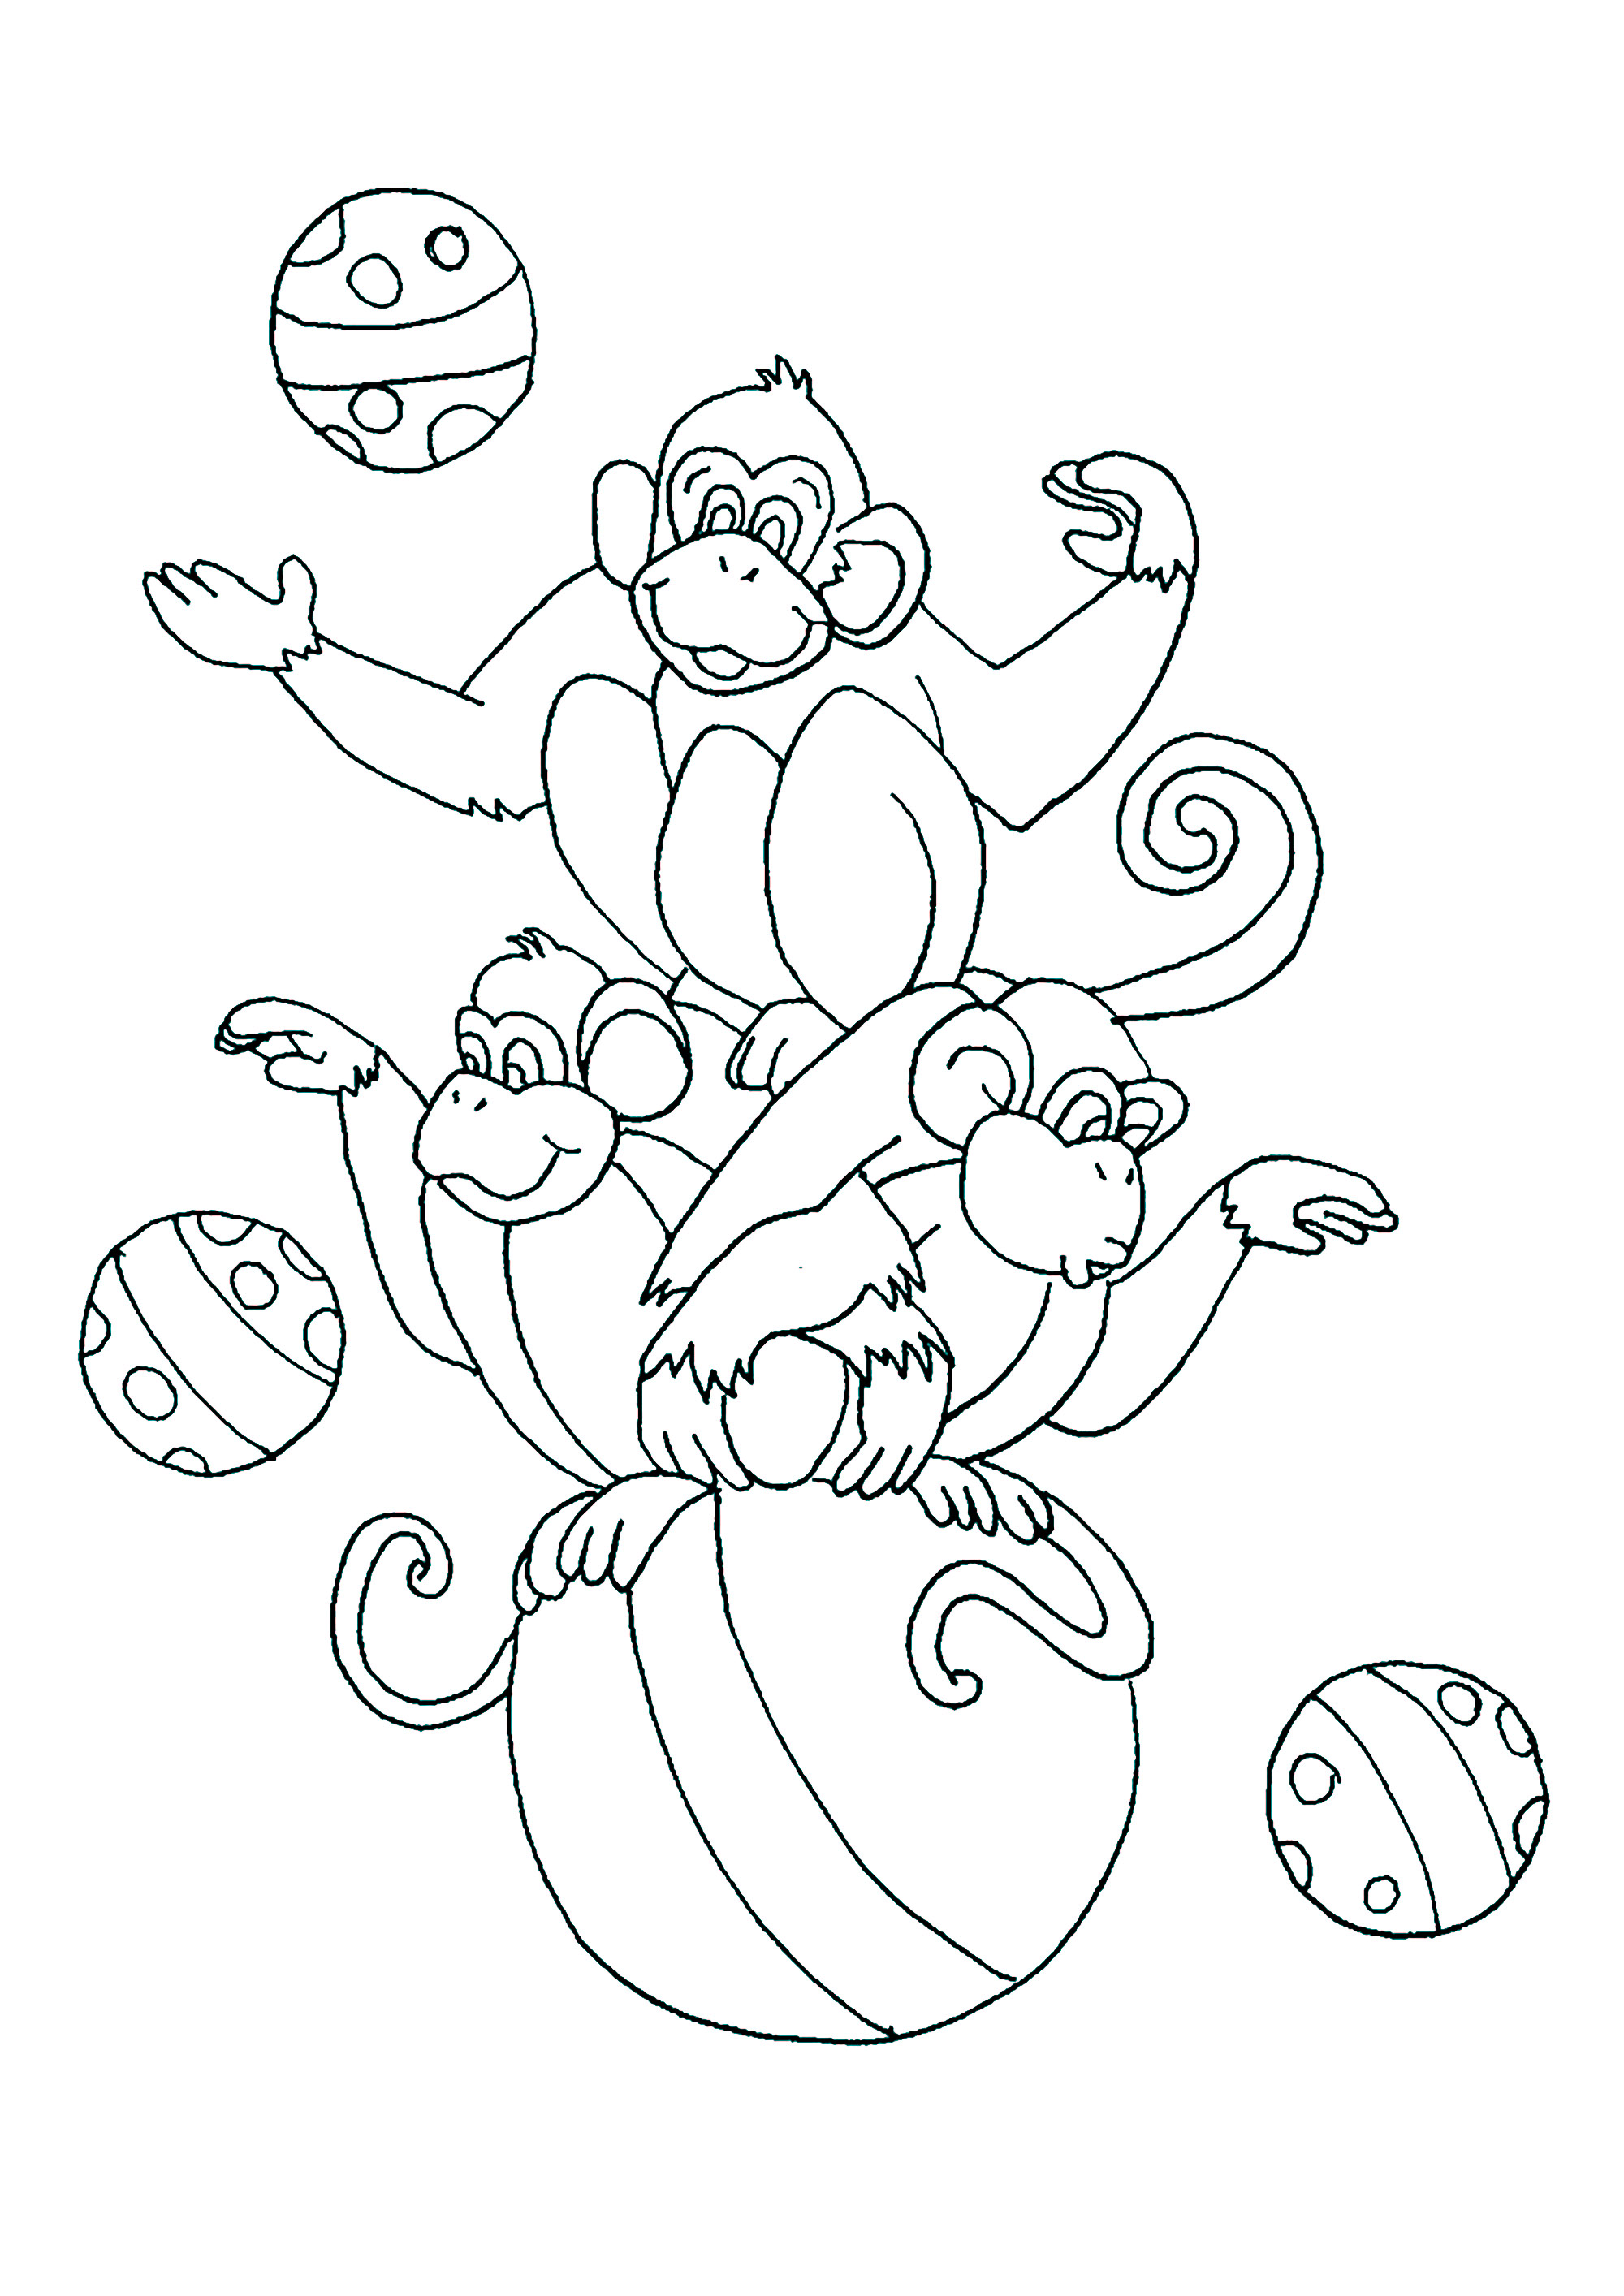 Monos de circo, jugando con una gran pelota. Colorea estos tres Monos y todos sus globos